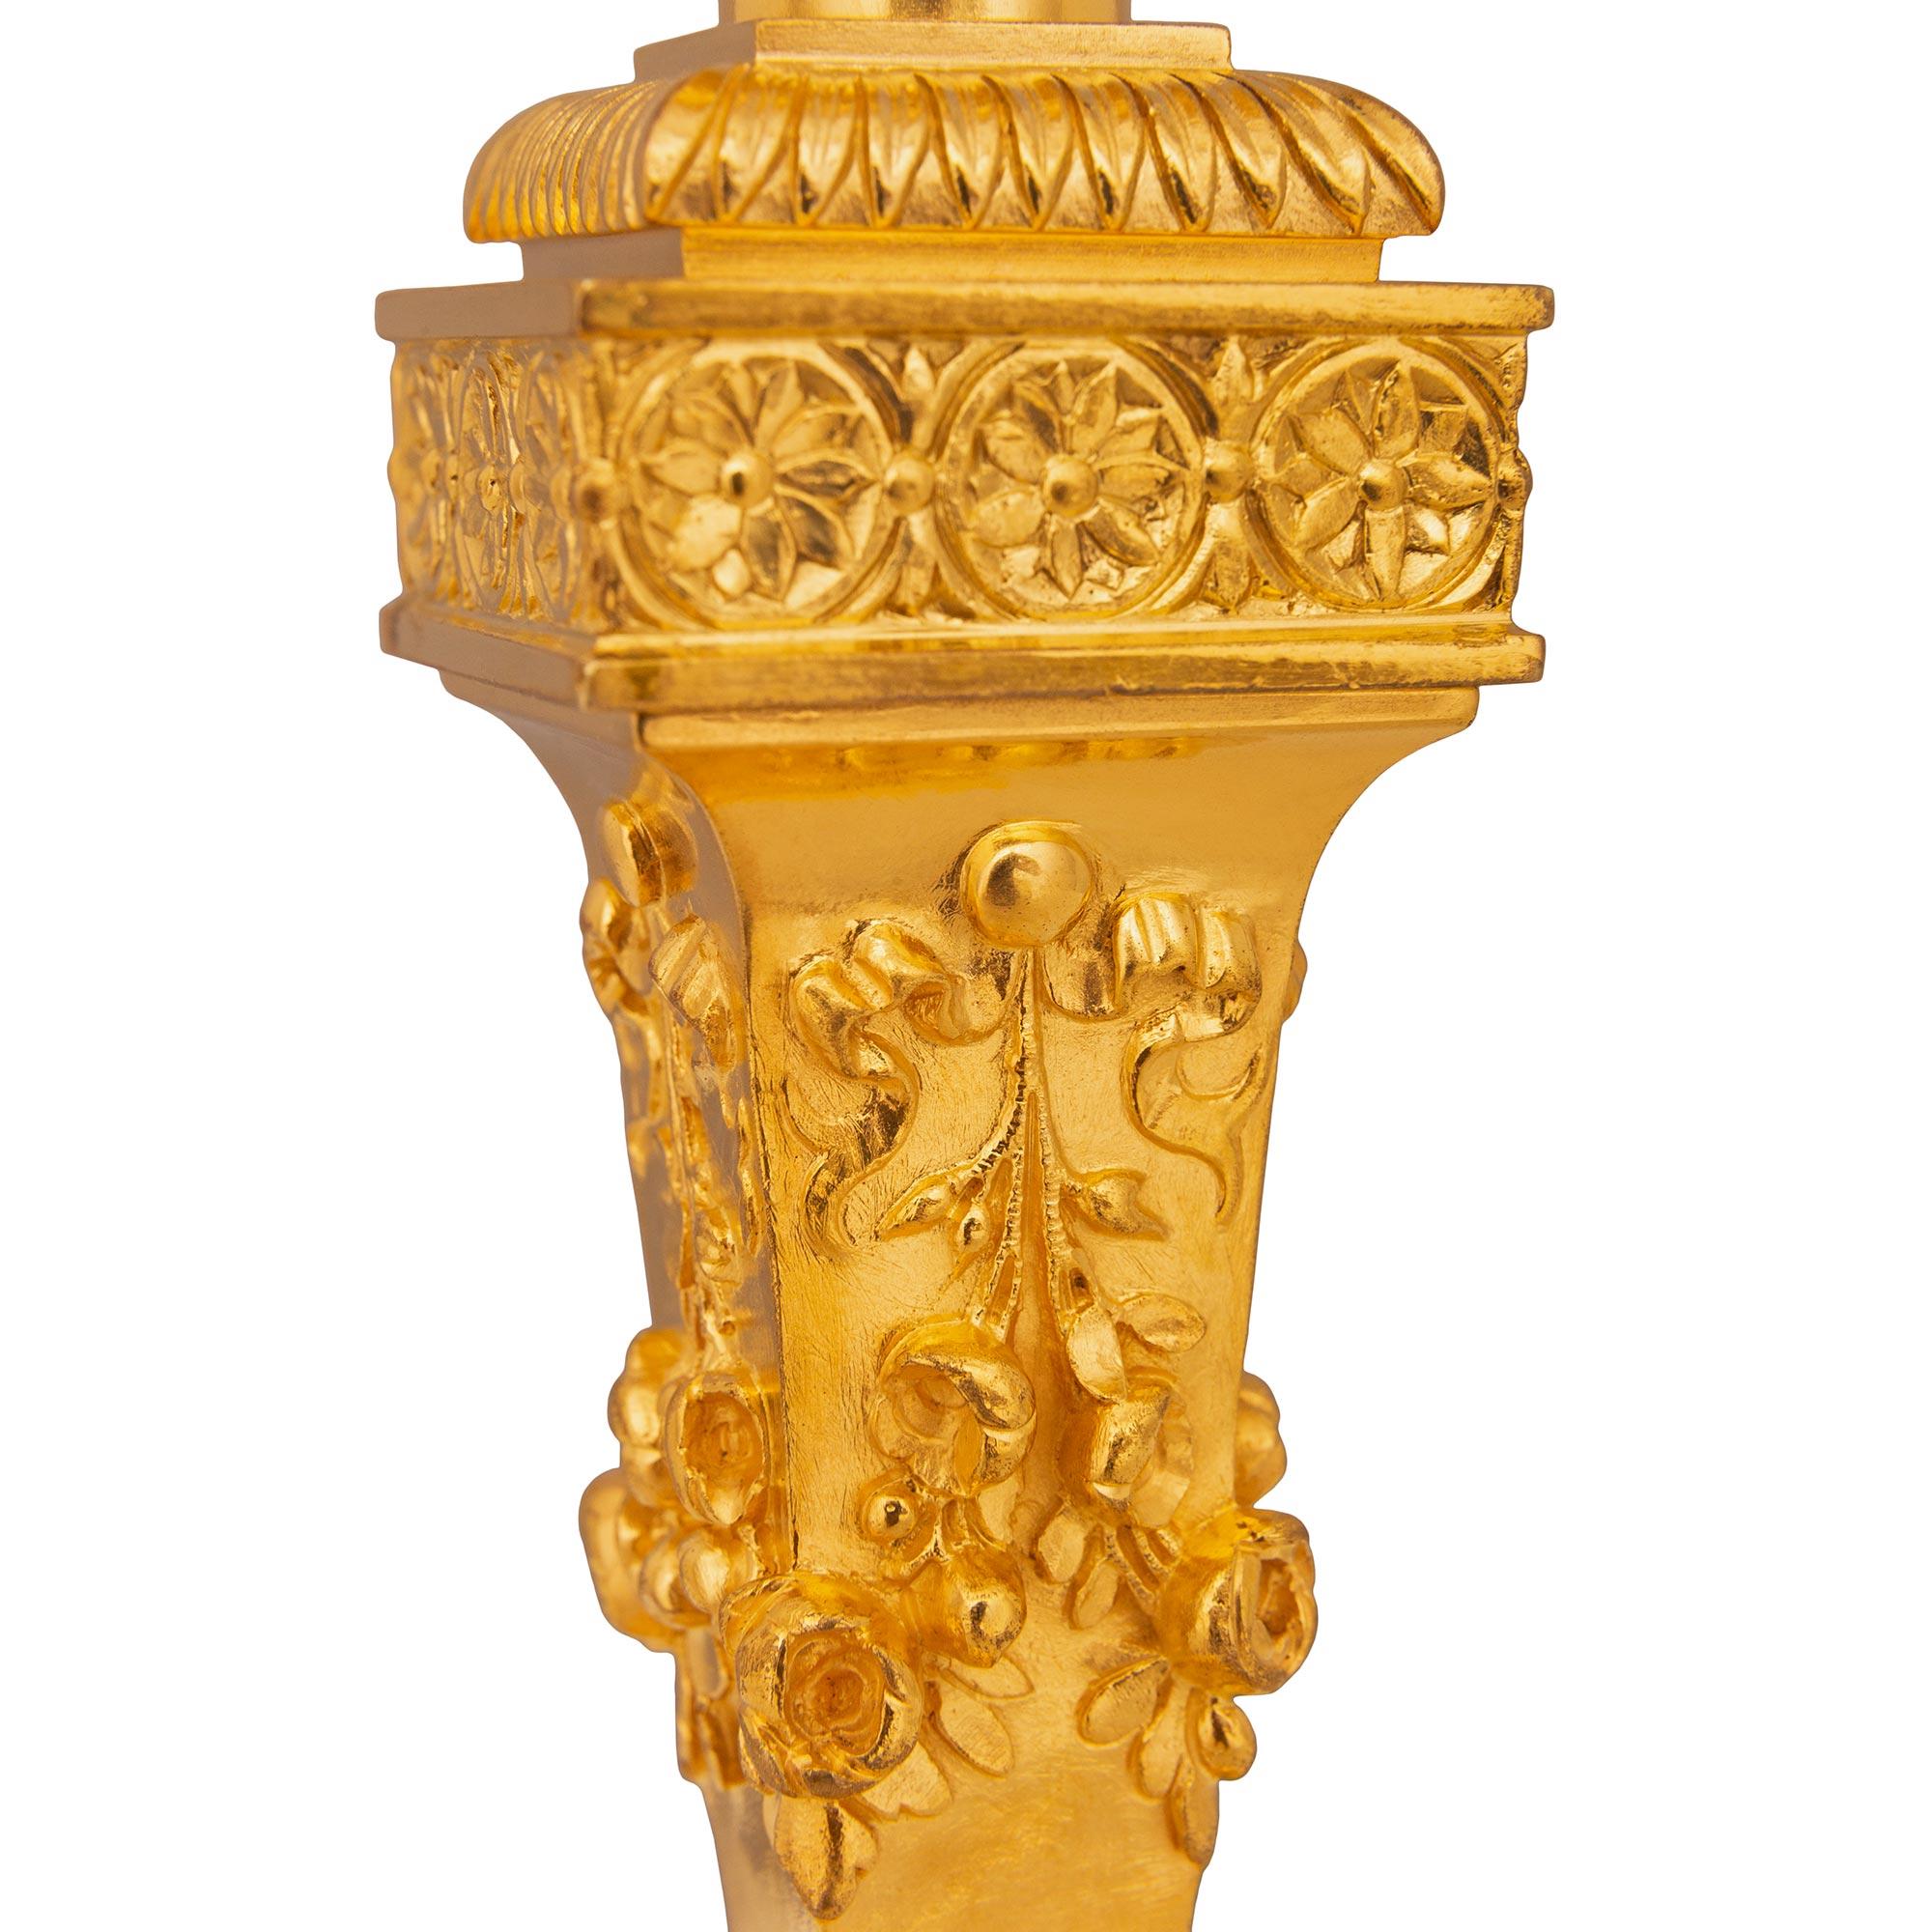 Un ensemble étonnant et finement détaillé de quatre chandeliers en bronze doré de style Louis XVI de la Belle Époque, signé F. Barbedienne. Chaque magnifique chandelier est posé sur sa base carrée signée, sous le support en forme de socle situé